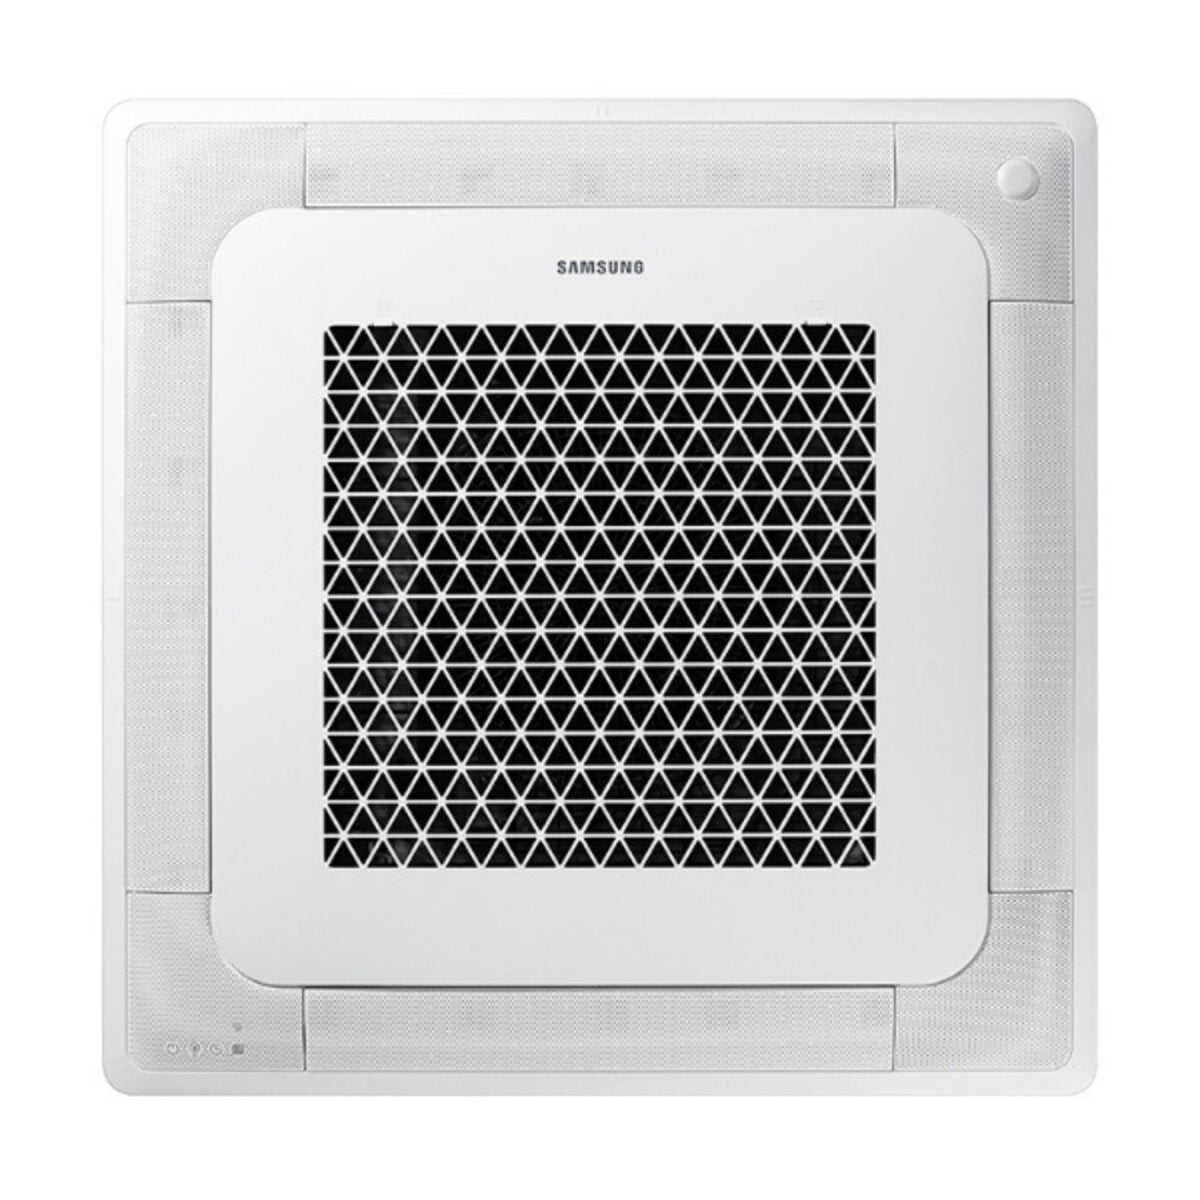 Samsung air conditioner Windfree 4-way penta split 7000 + 12000 + 12000 + 12000 + 12000 BTU inverter A ++ outdoor unit 10.0 kW